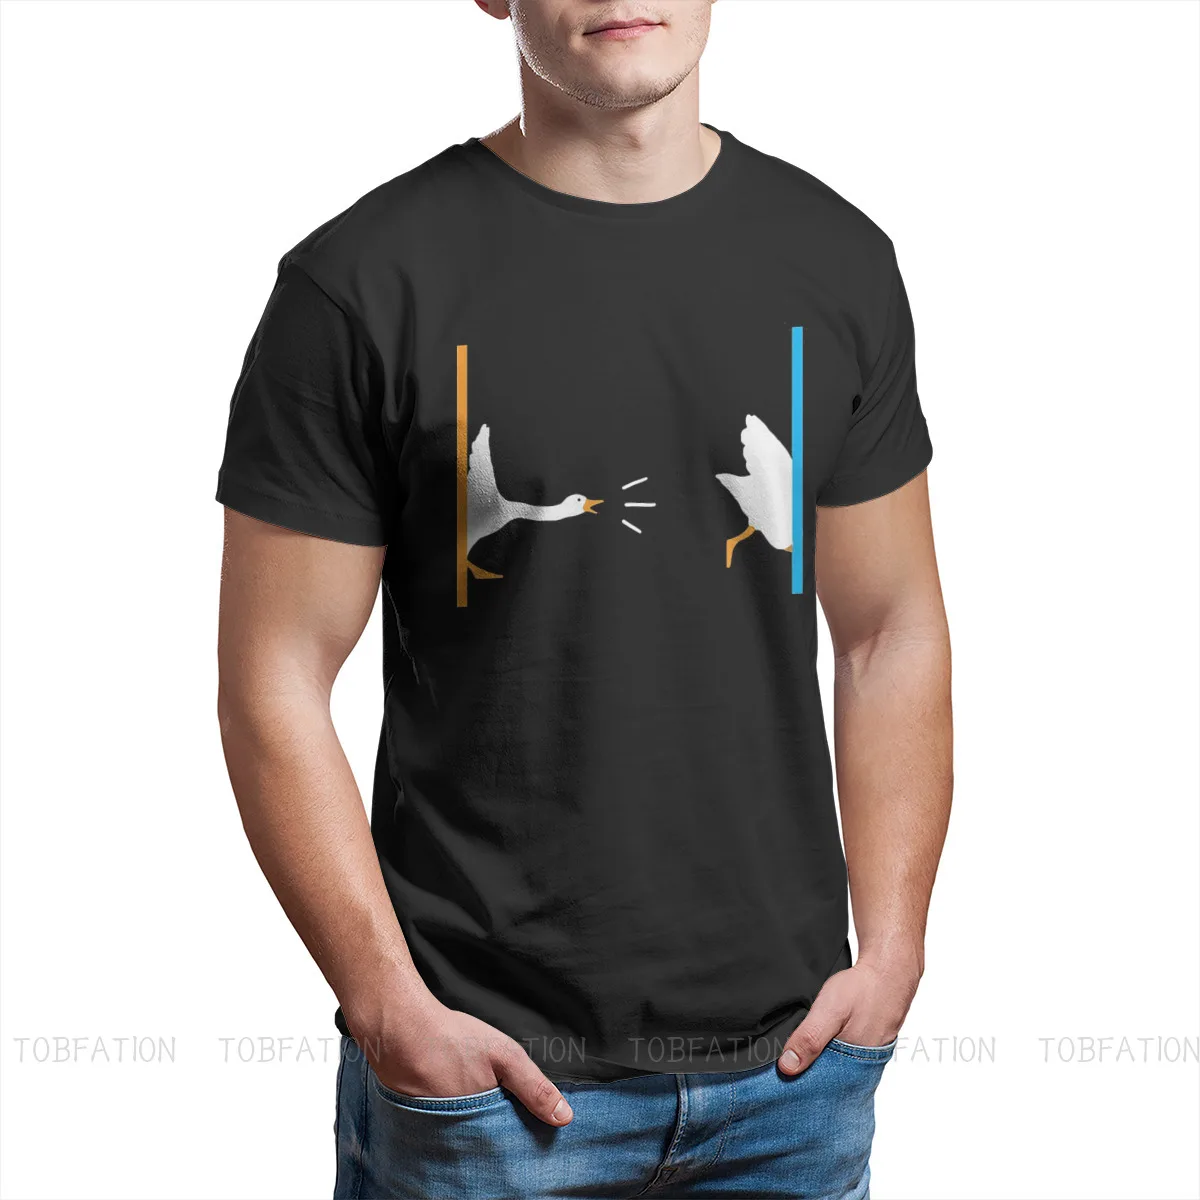 Portal Honk Unique TShirt Untitled Goose Bell Game Internet meme Leisure T Shirt Hot Sale Stuff For Men Women